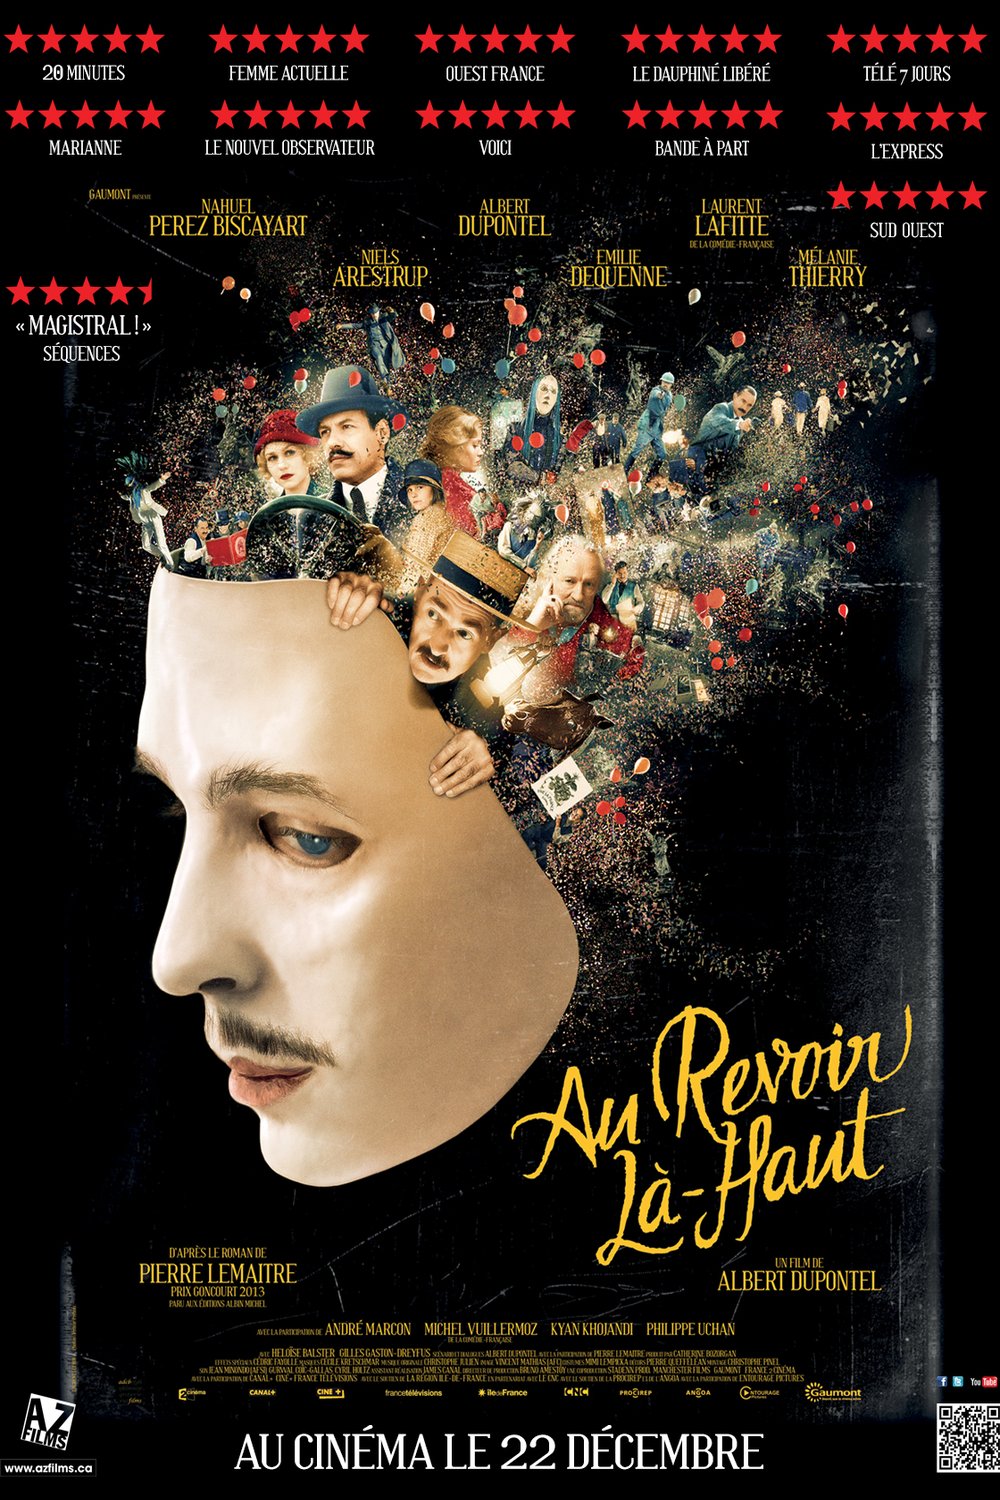 Poster of the movie Au revoir là-haut